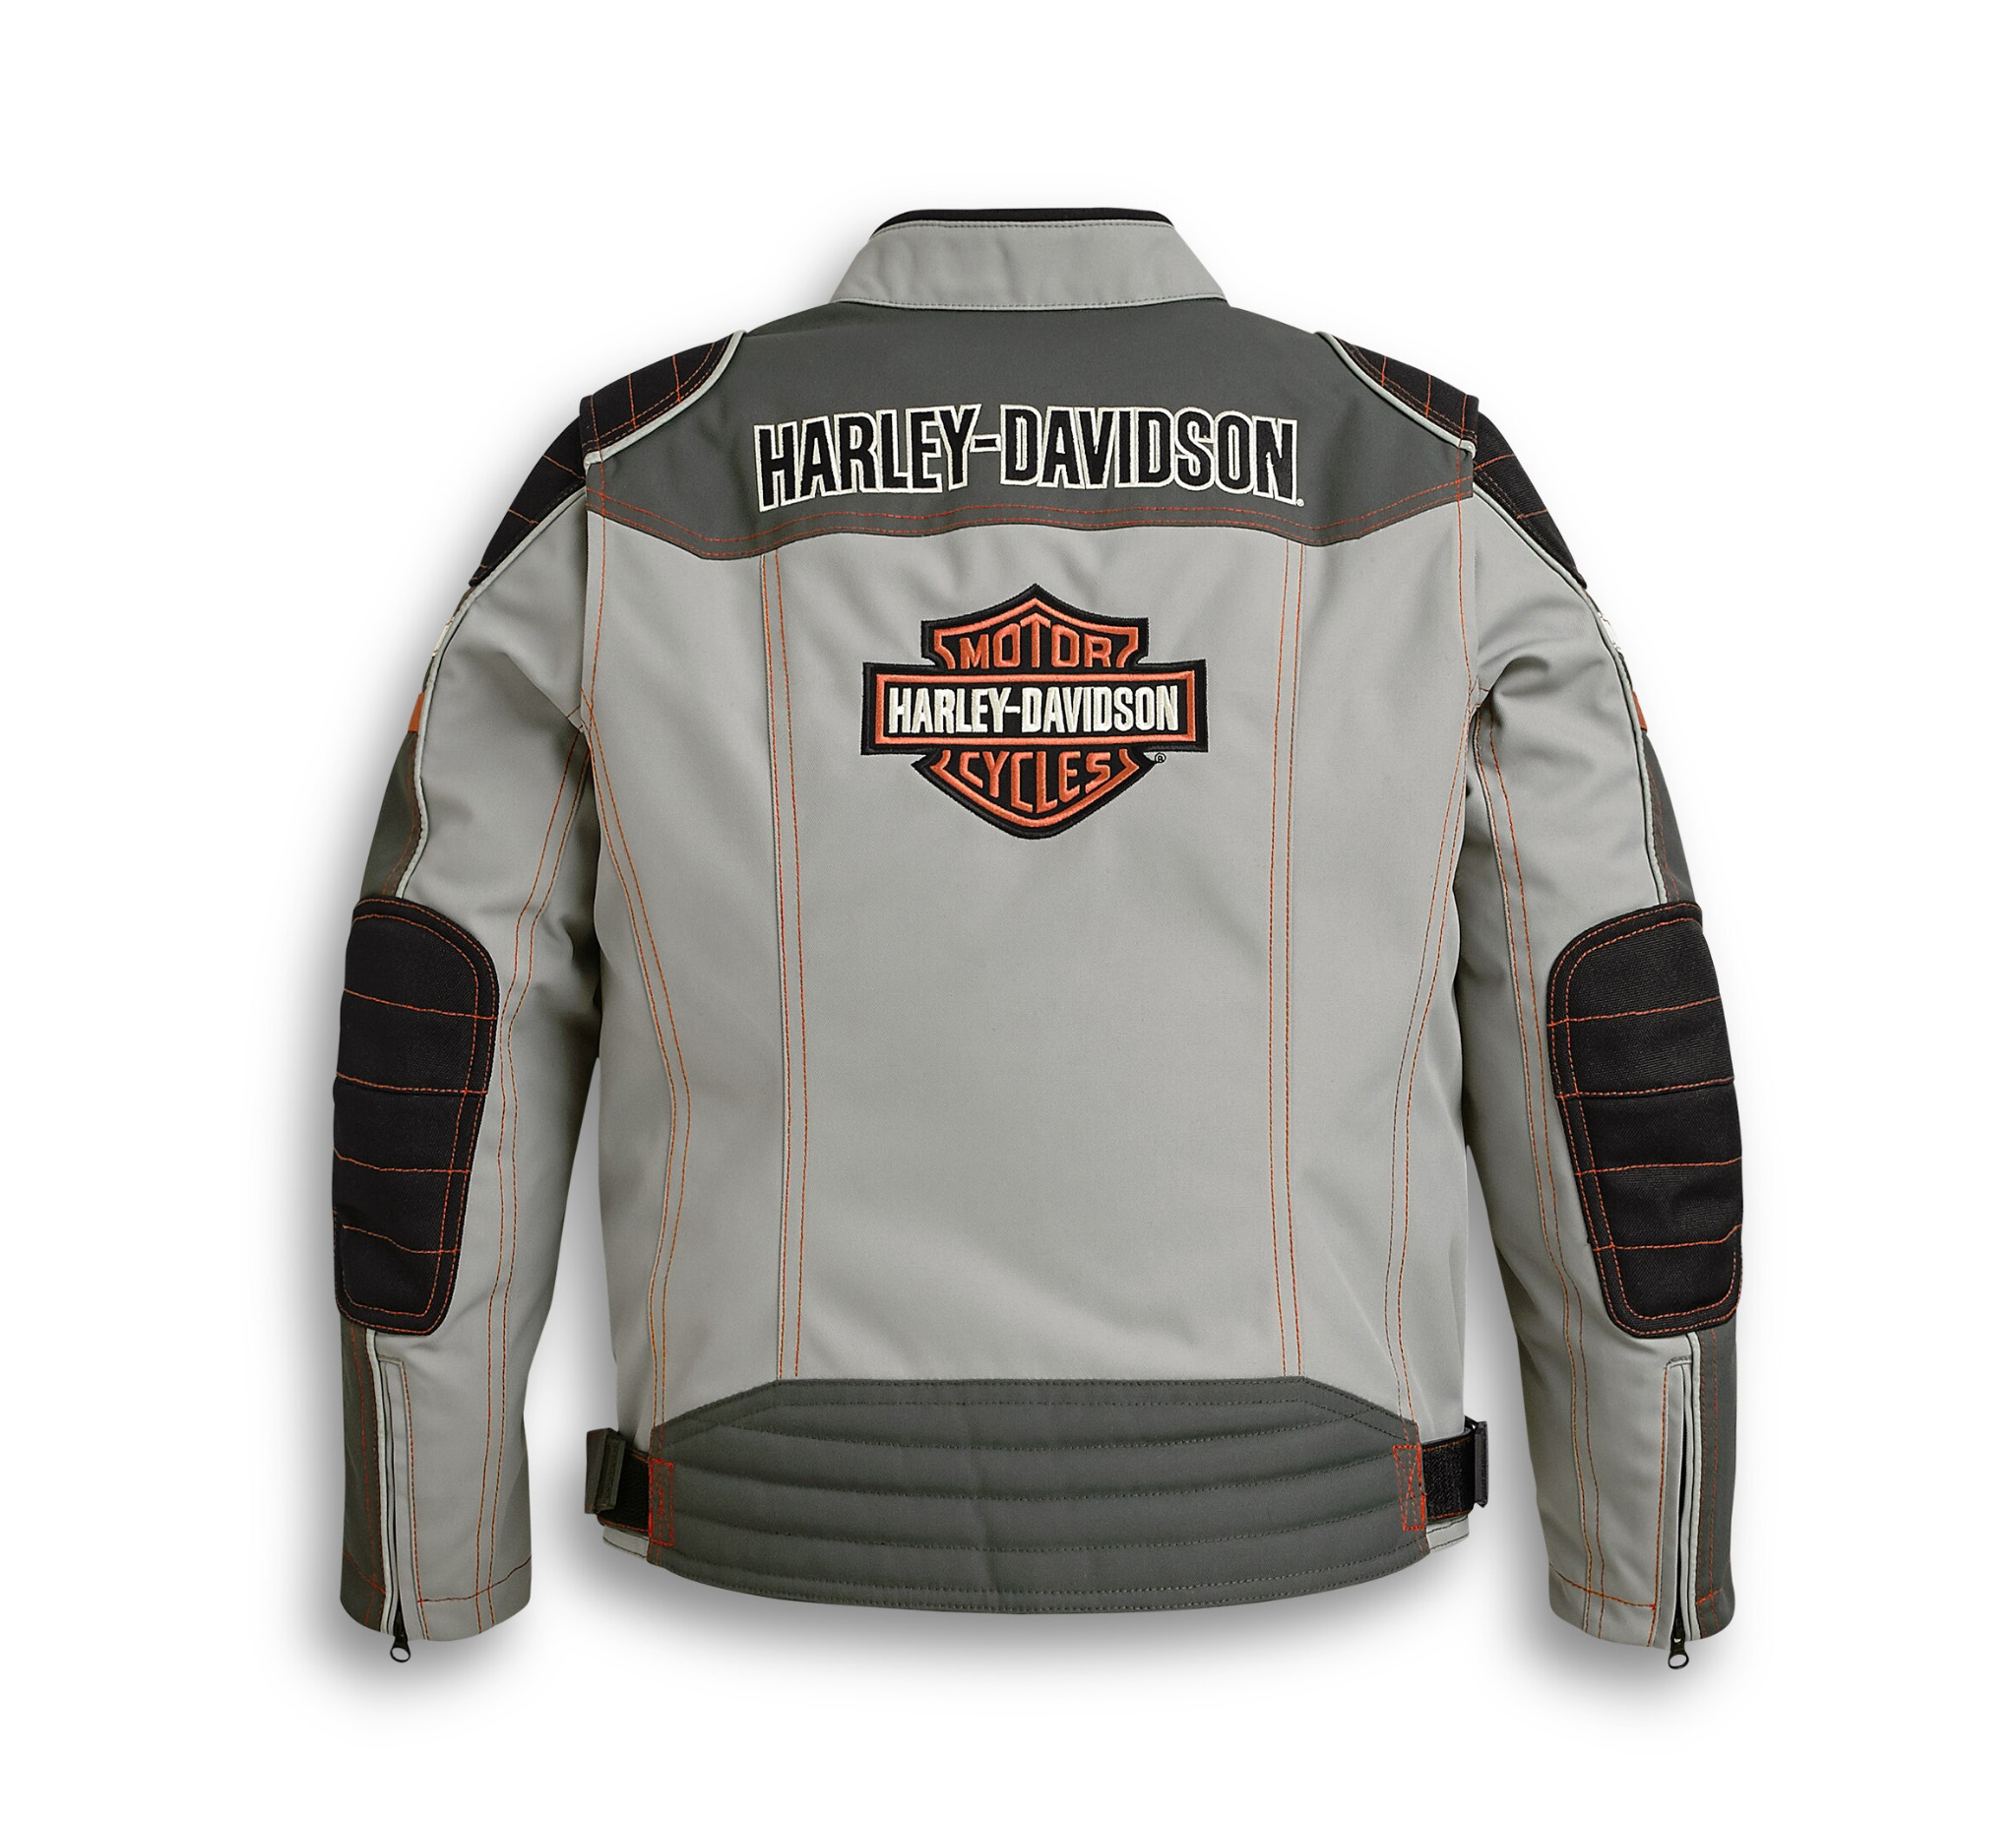 Harley Davidson Kids Shirt Promotion Off64